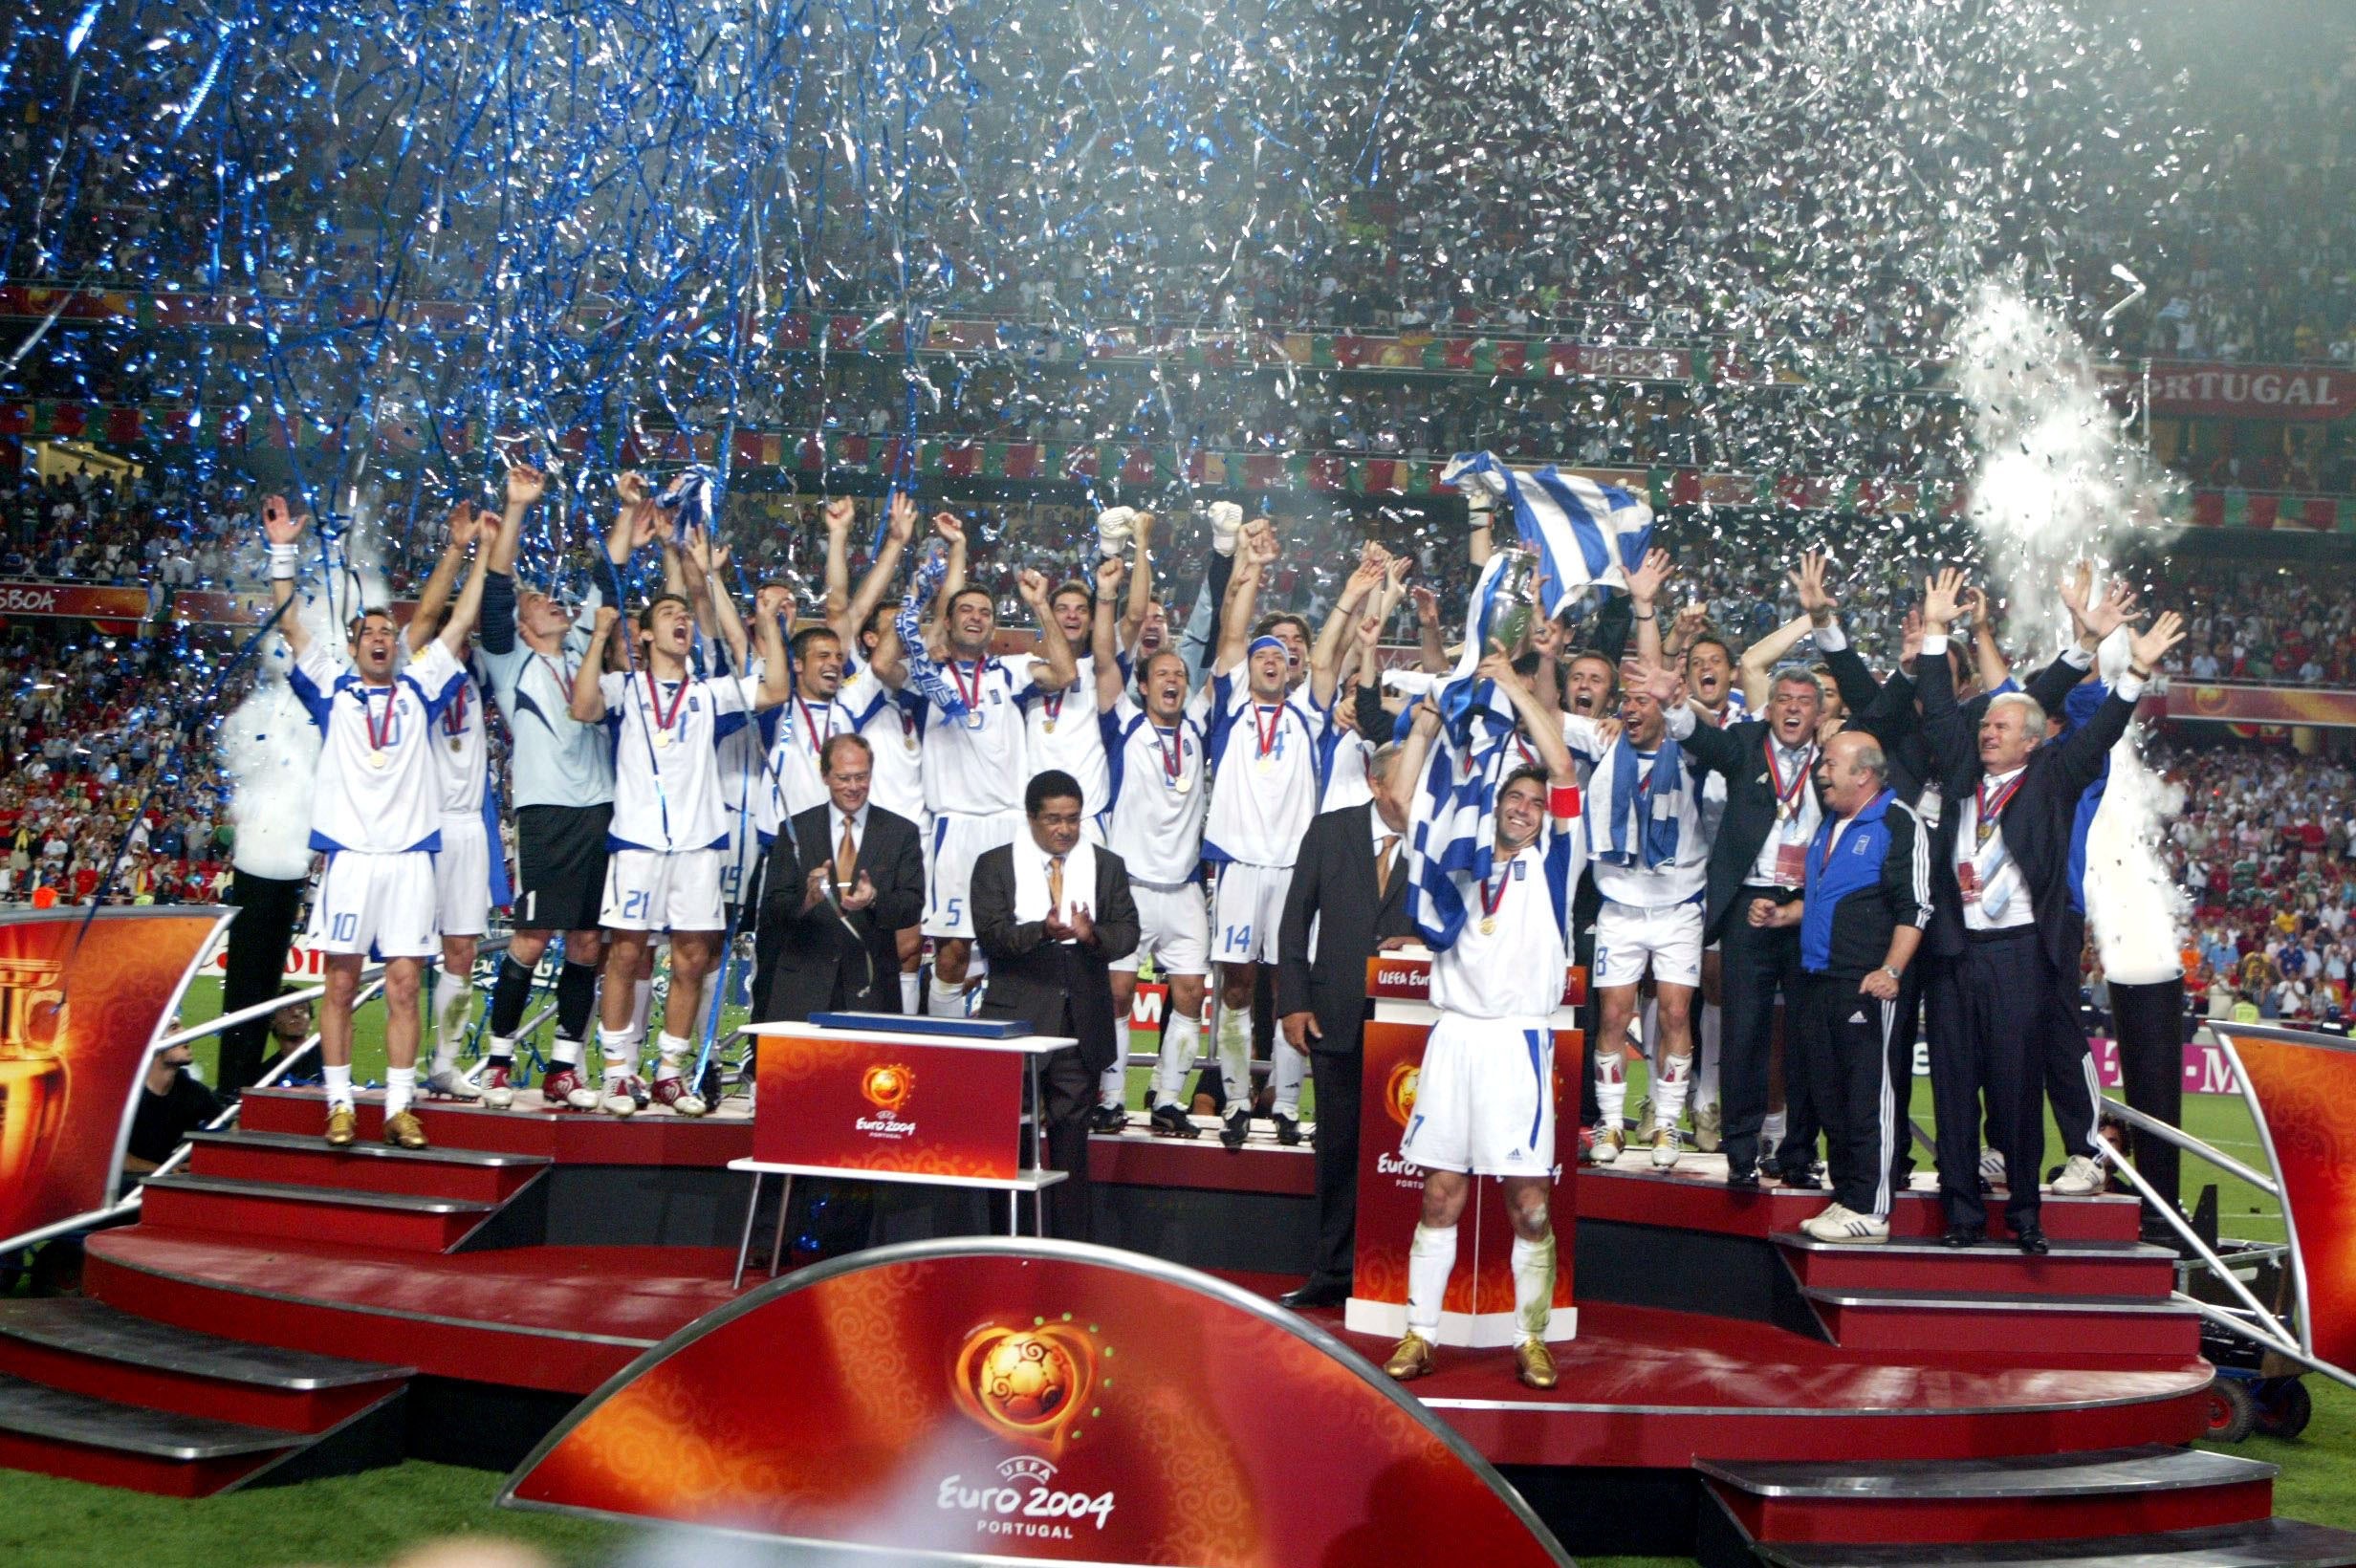 Euro 2004